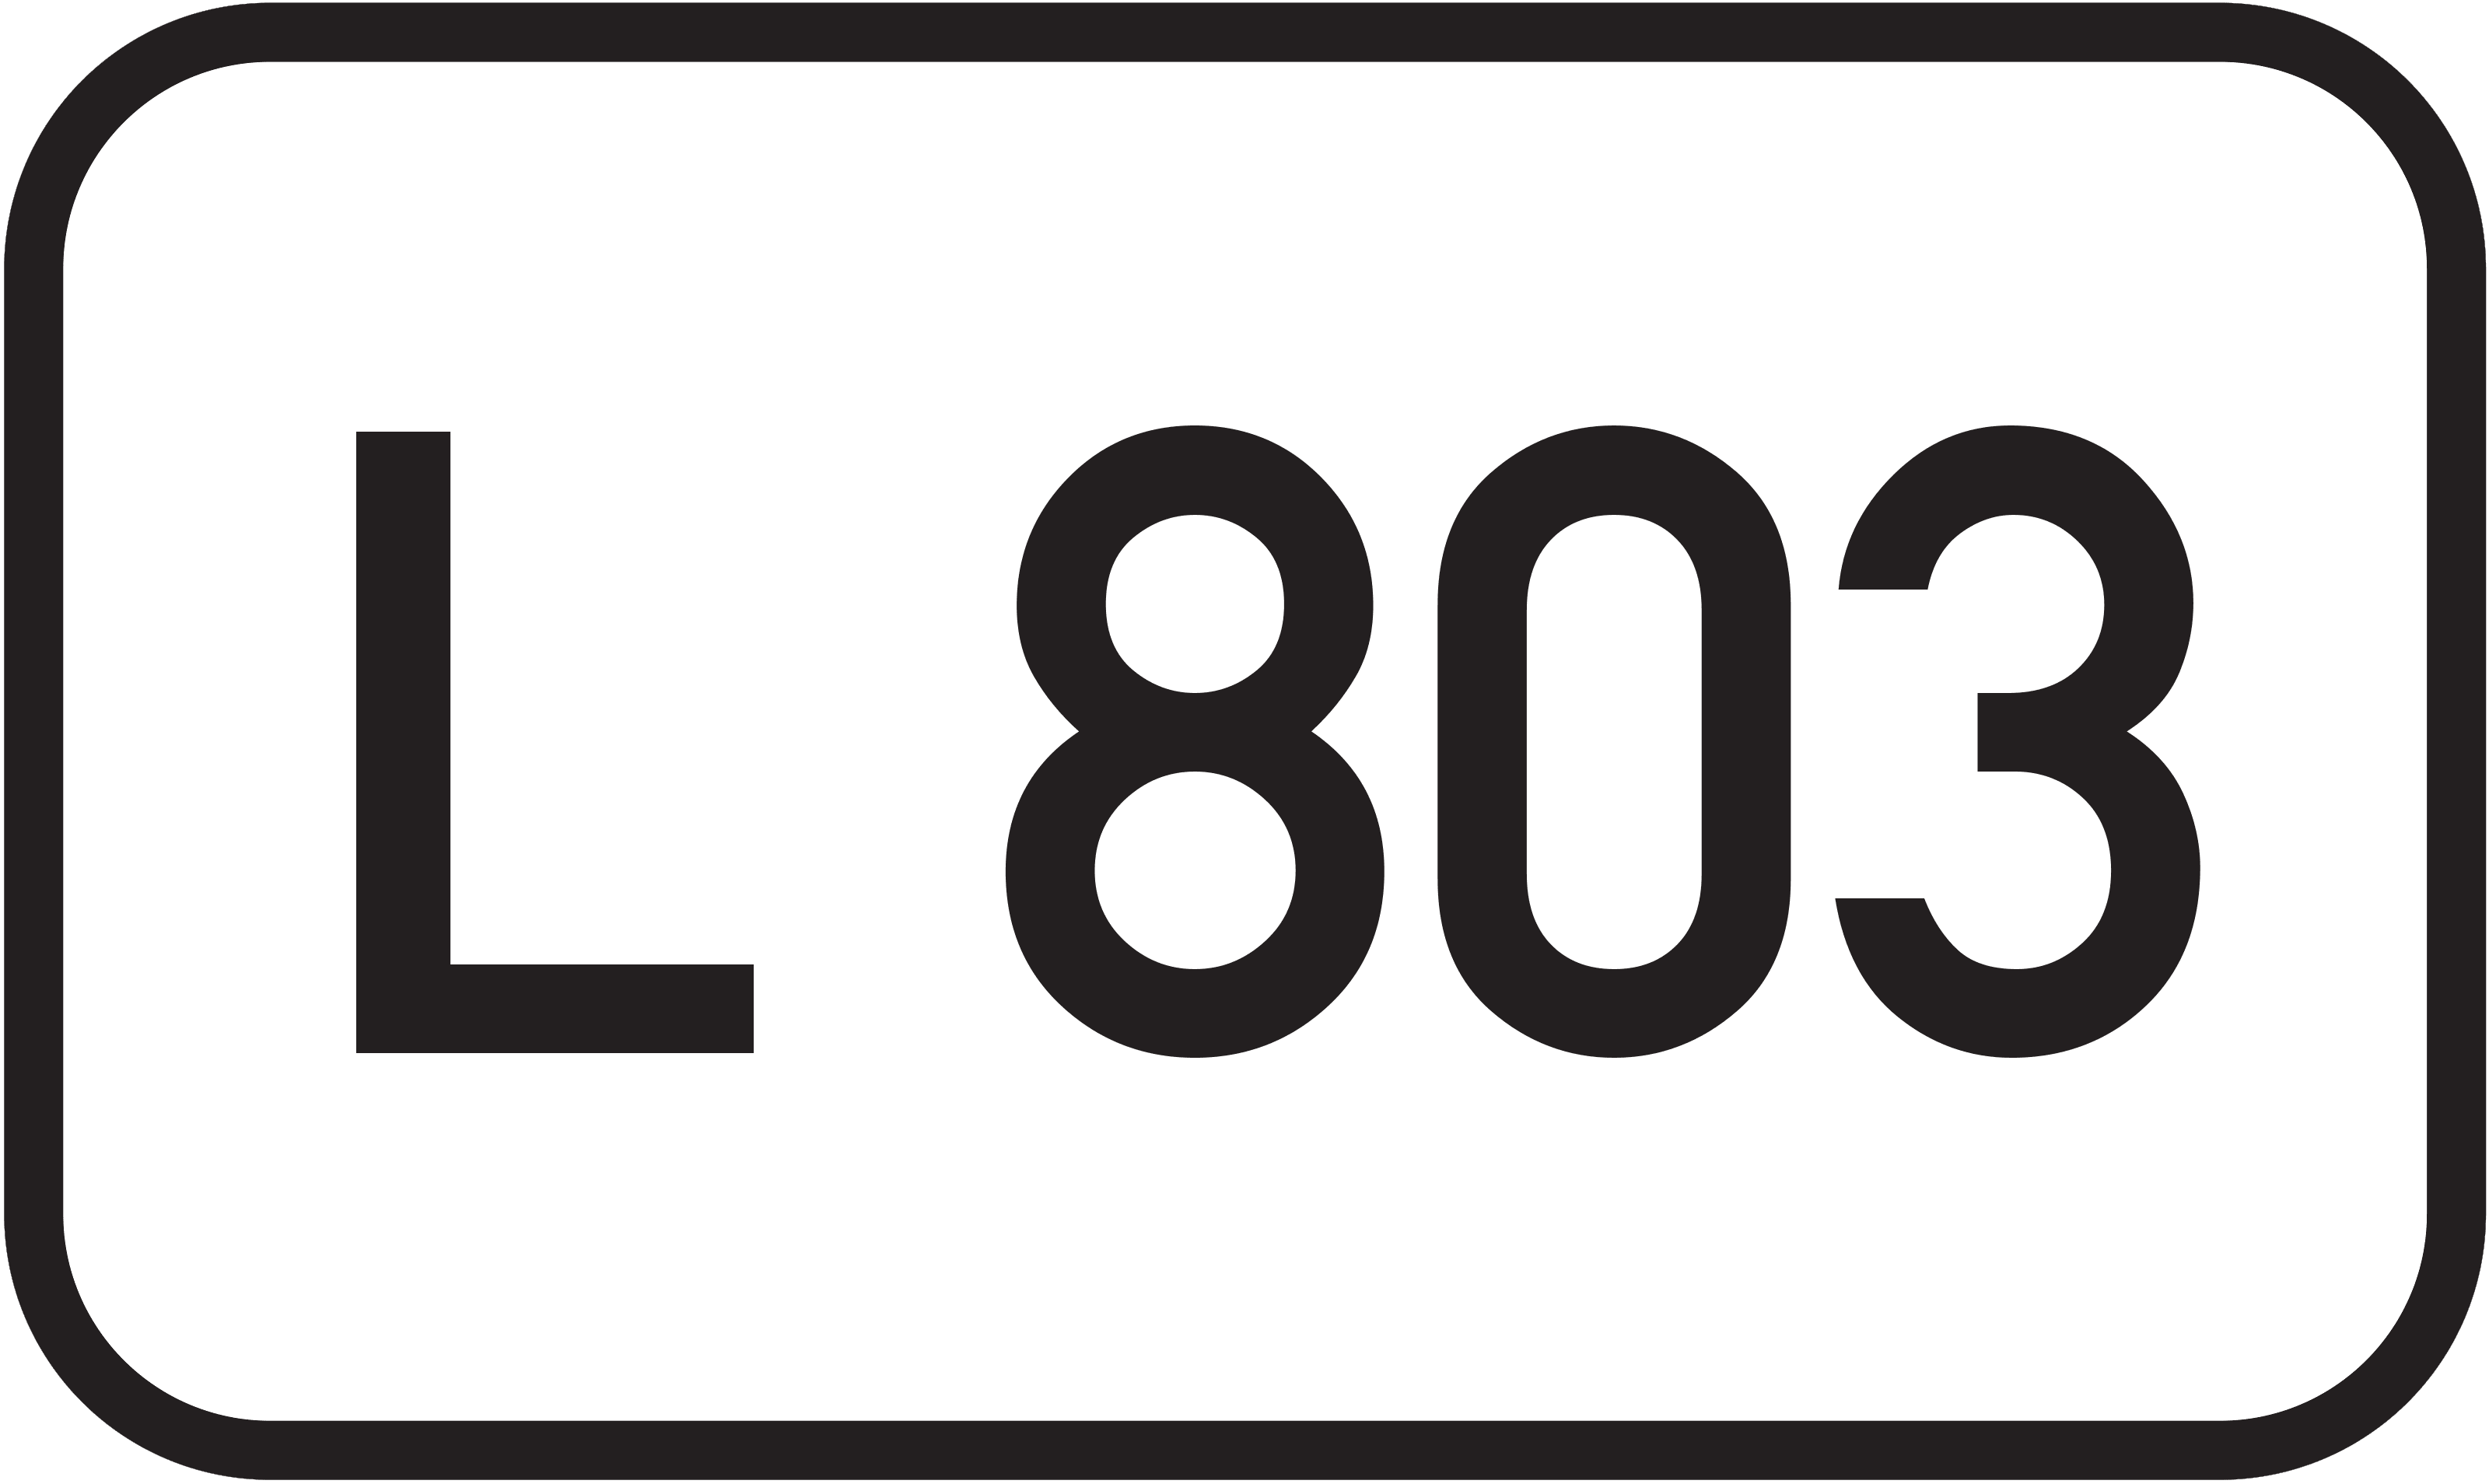 Landesstraße L 803